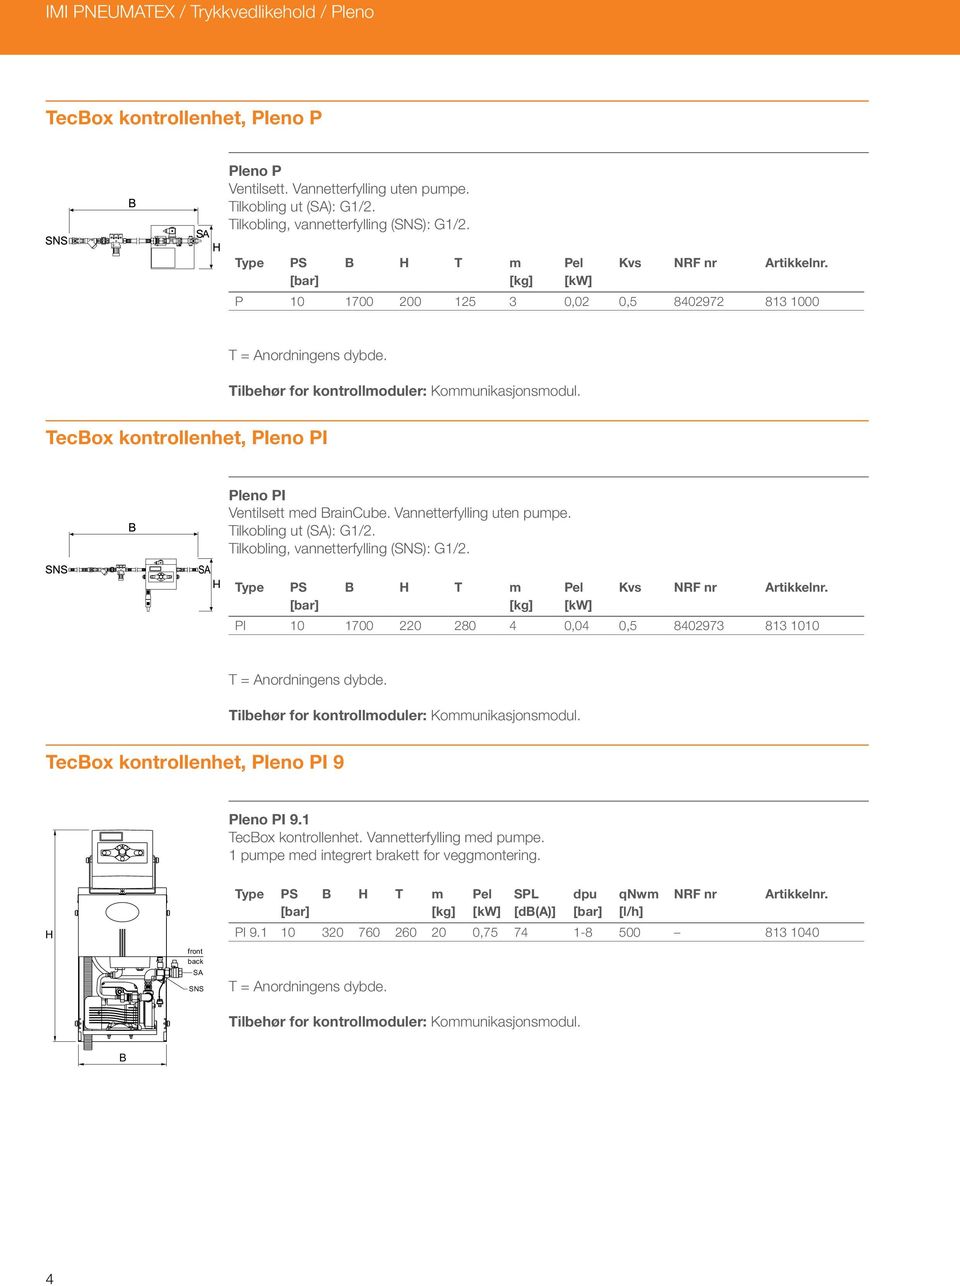 Tilkobling ut (SA): G1/2. Tilkobling, vannetterfylling (SNS): G1/2. T m Kvs PI 10 1700 220 280 4 0,04 0,5 8402973 813 1010 Tilbehør for kontrollmoduler: Kommunikasjonsmodul.